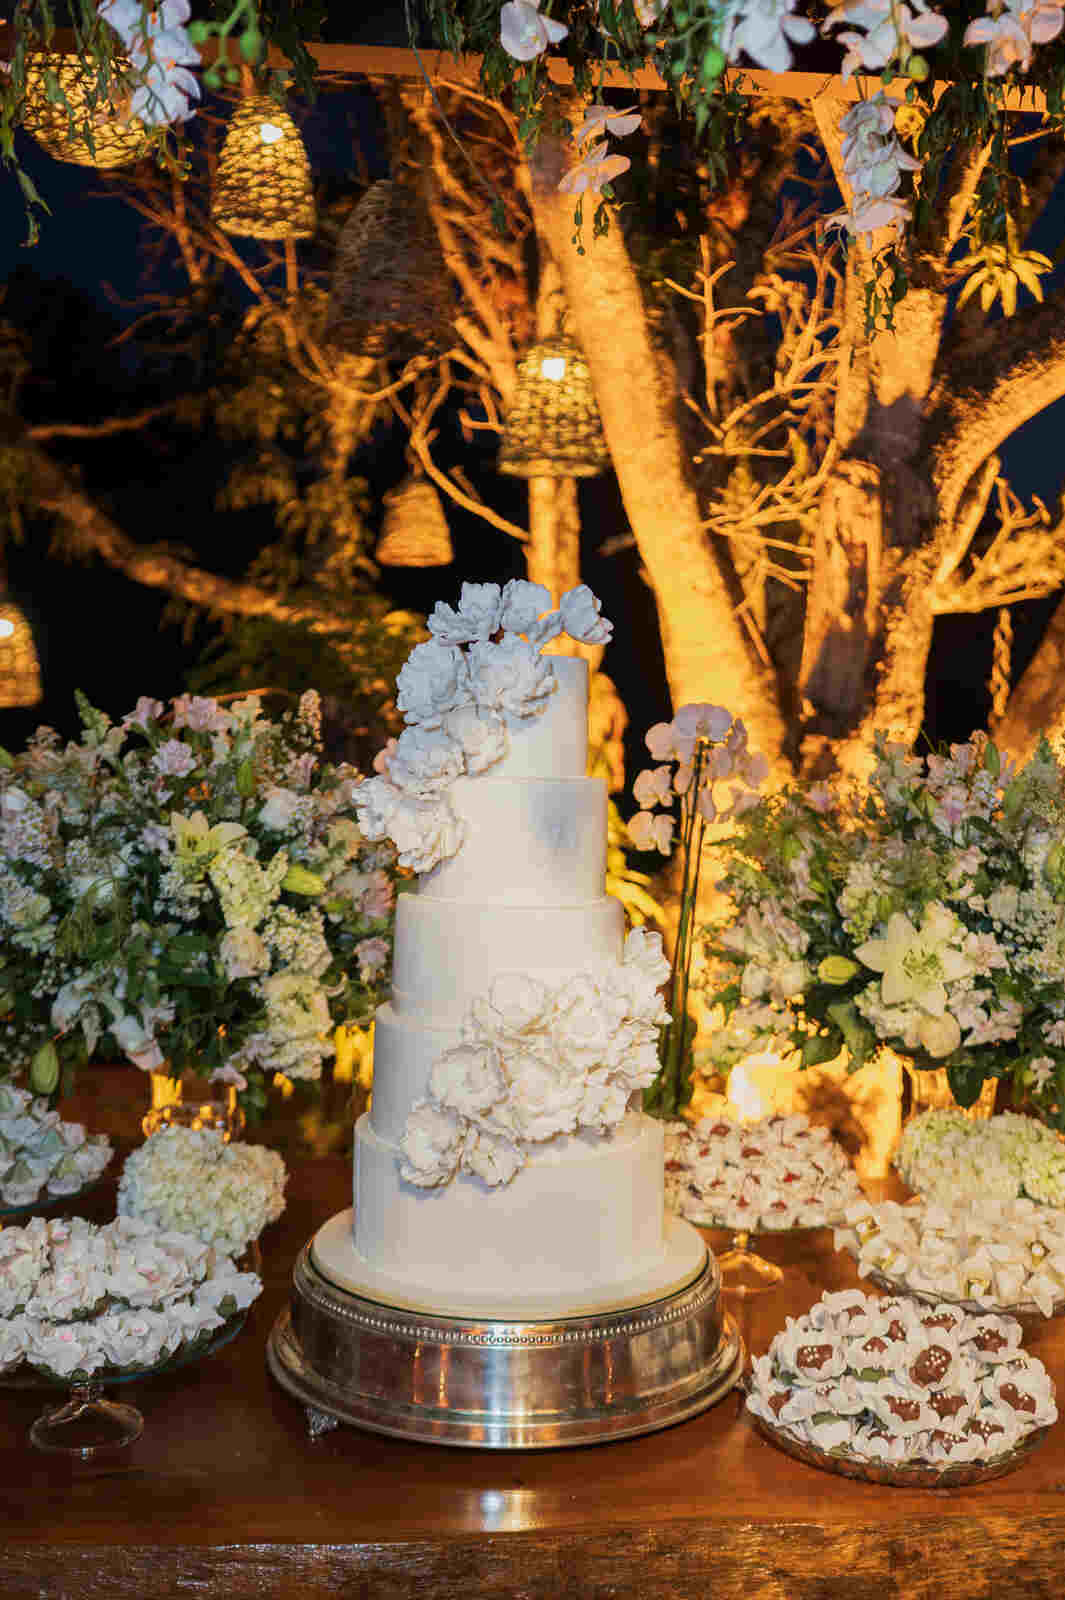 mesa com bolo de casamento branco com flores com 5 andares ao lado de bandejas com doces